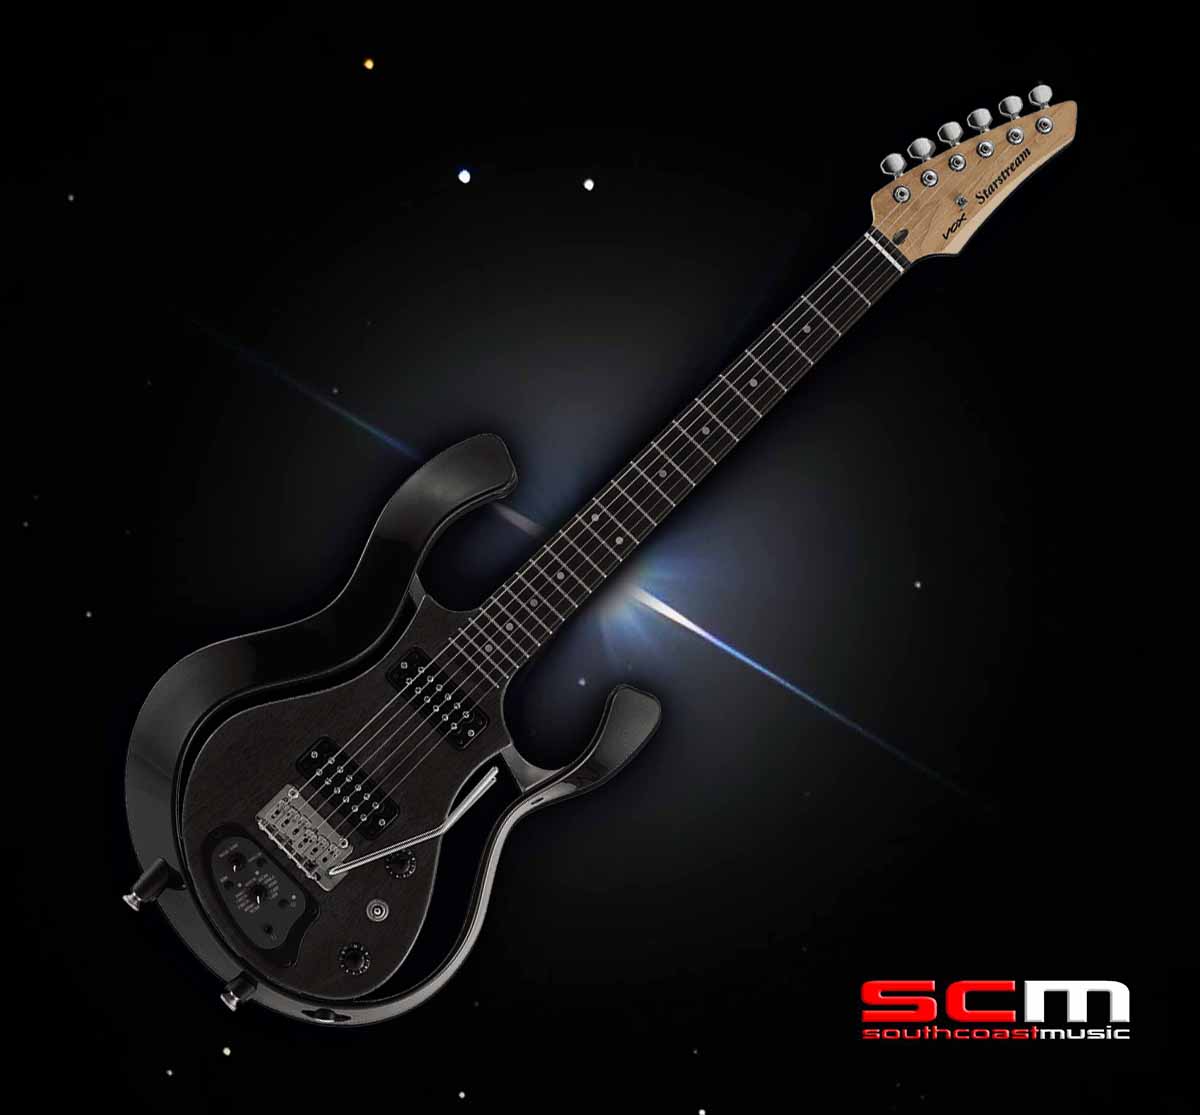 VOX Starstream Type 1 Plus Modeling Guitar Black Finish New